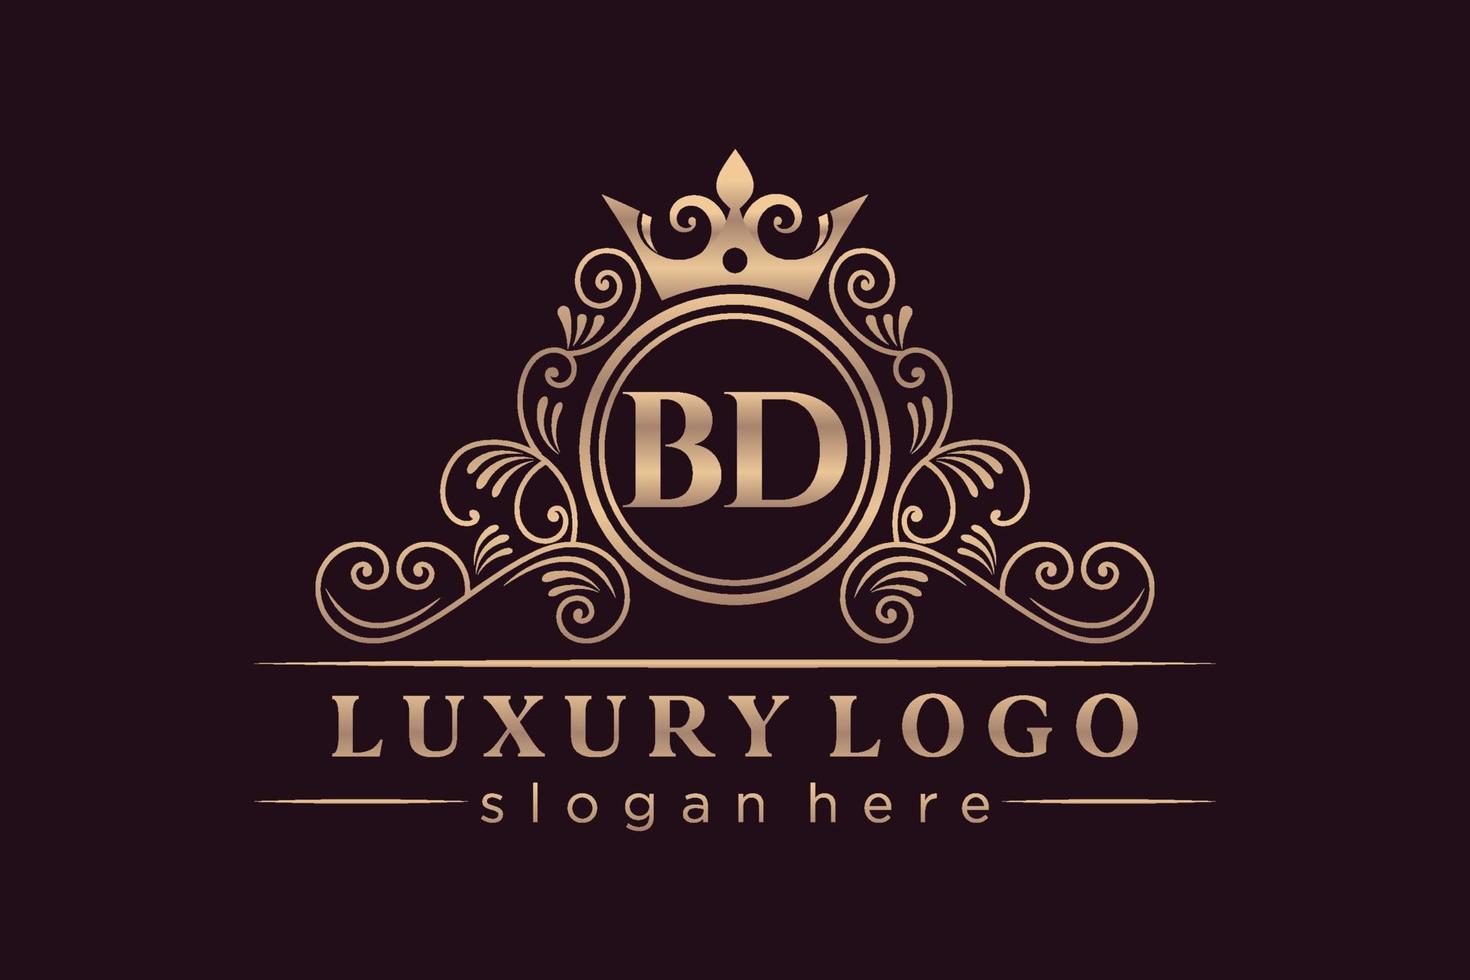 bd anfangsbuchstabe gold kalligrafisch feminin floral handgezeichnet heraldisch monogramm antik vintage stil luxus logo design premium vektor